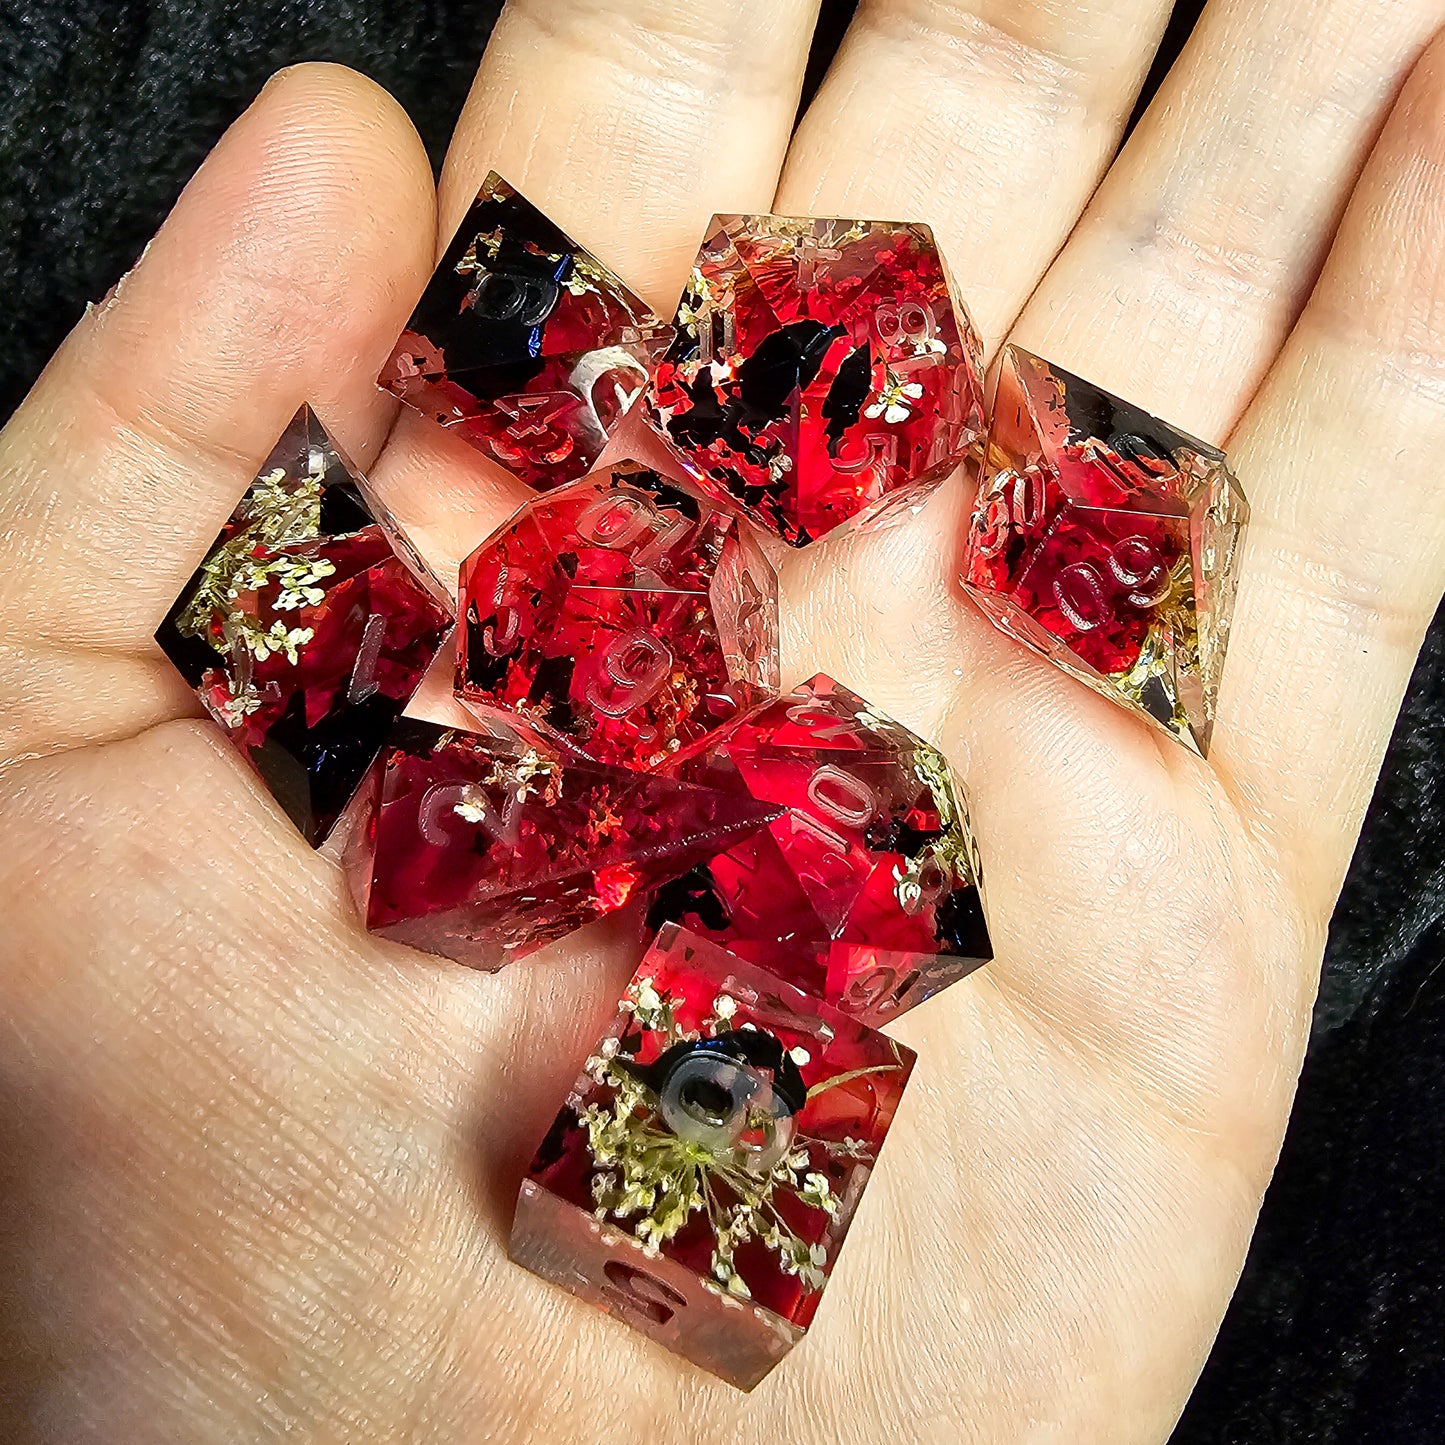 Bloody Queen uninked 8 piece dice set